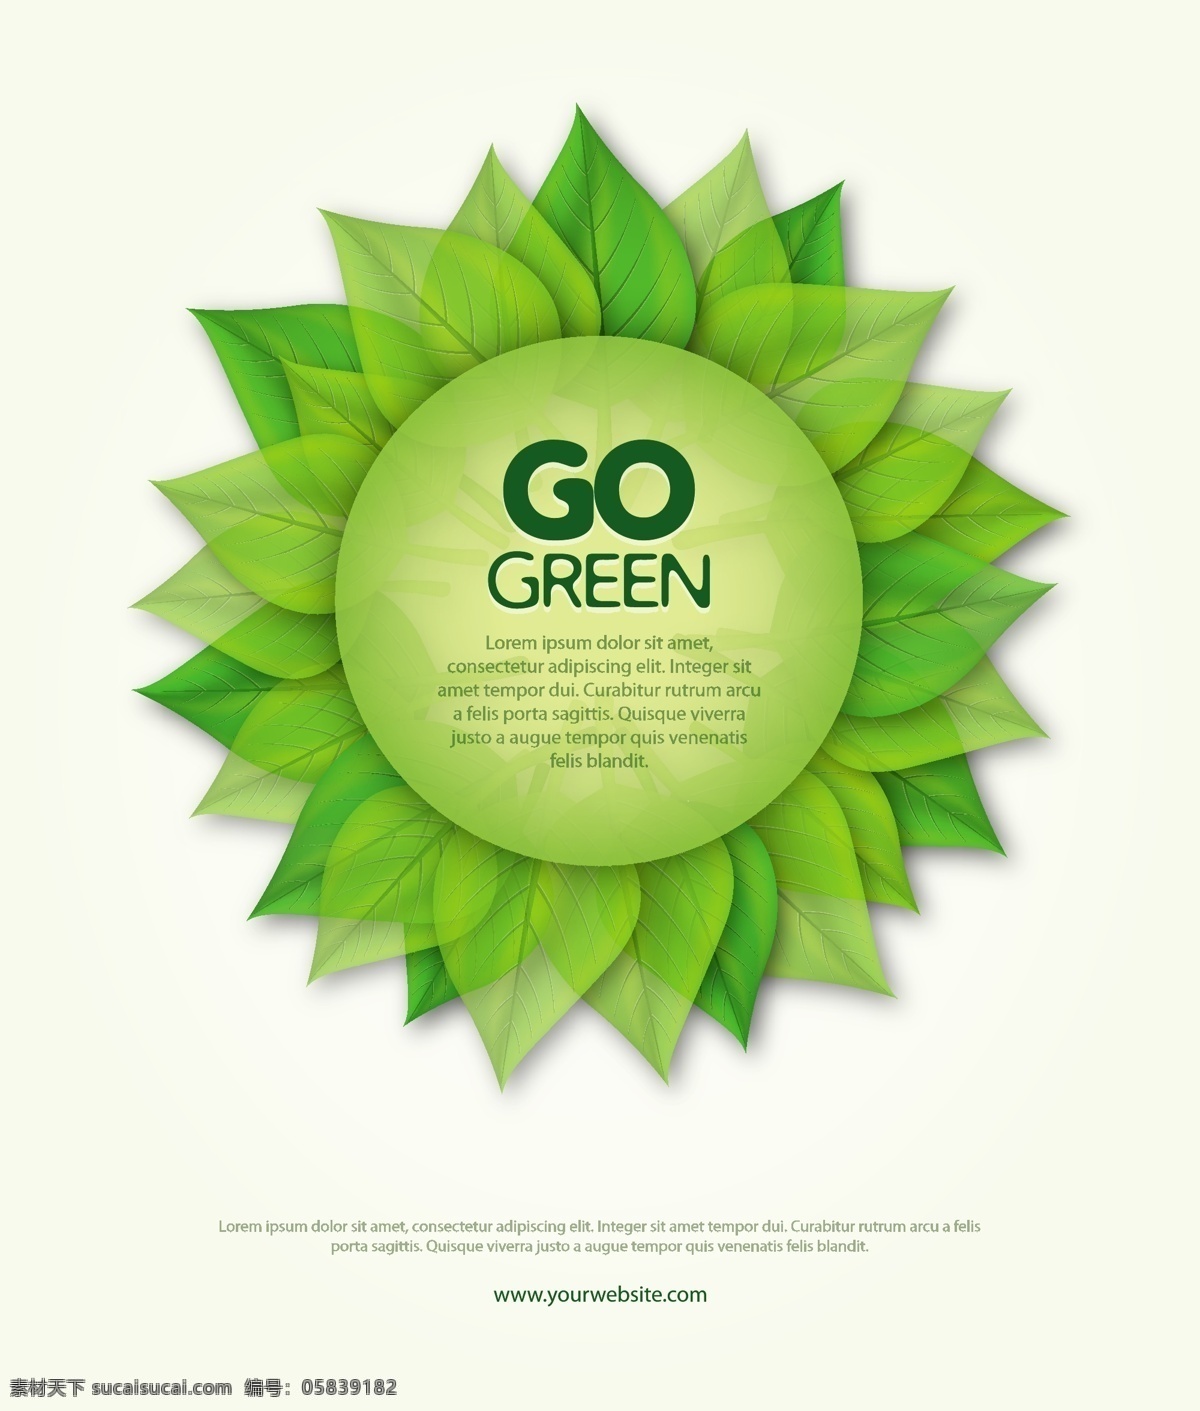 叶 生态 矢量 插画 界 包 插图 绿 免费 循环 病 媒 生物 载体 人工智能 ps 图象处理 软件 现代的 独特的 质量 新鲜的 圆 使用绿色食品 生态学 海报 矢量图